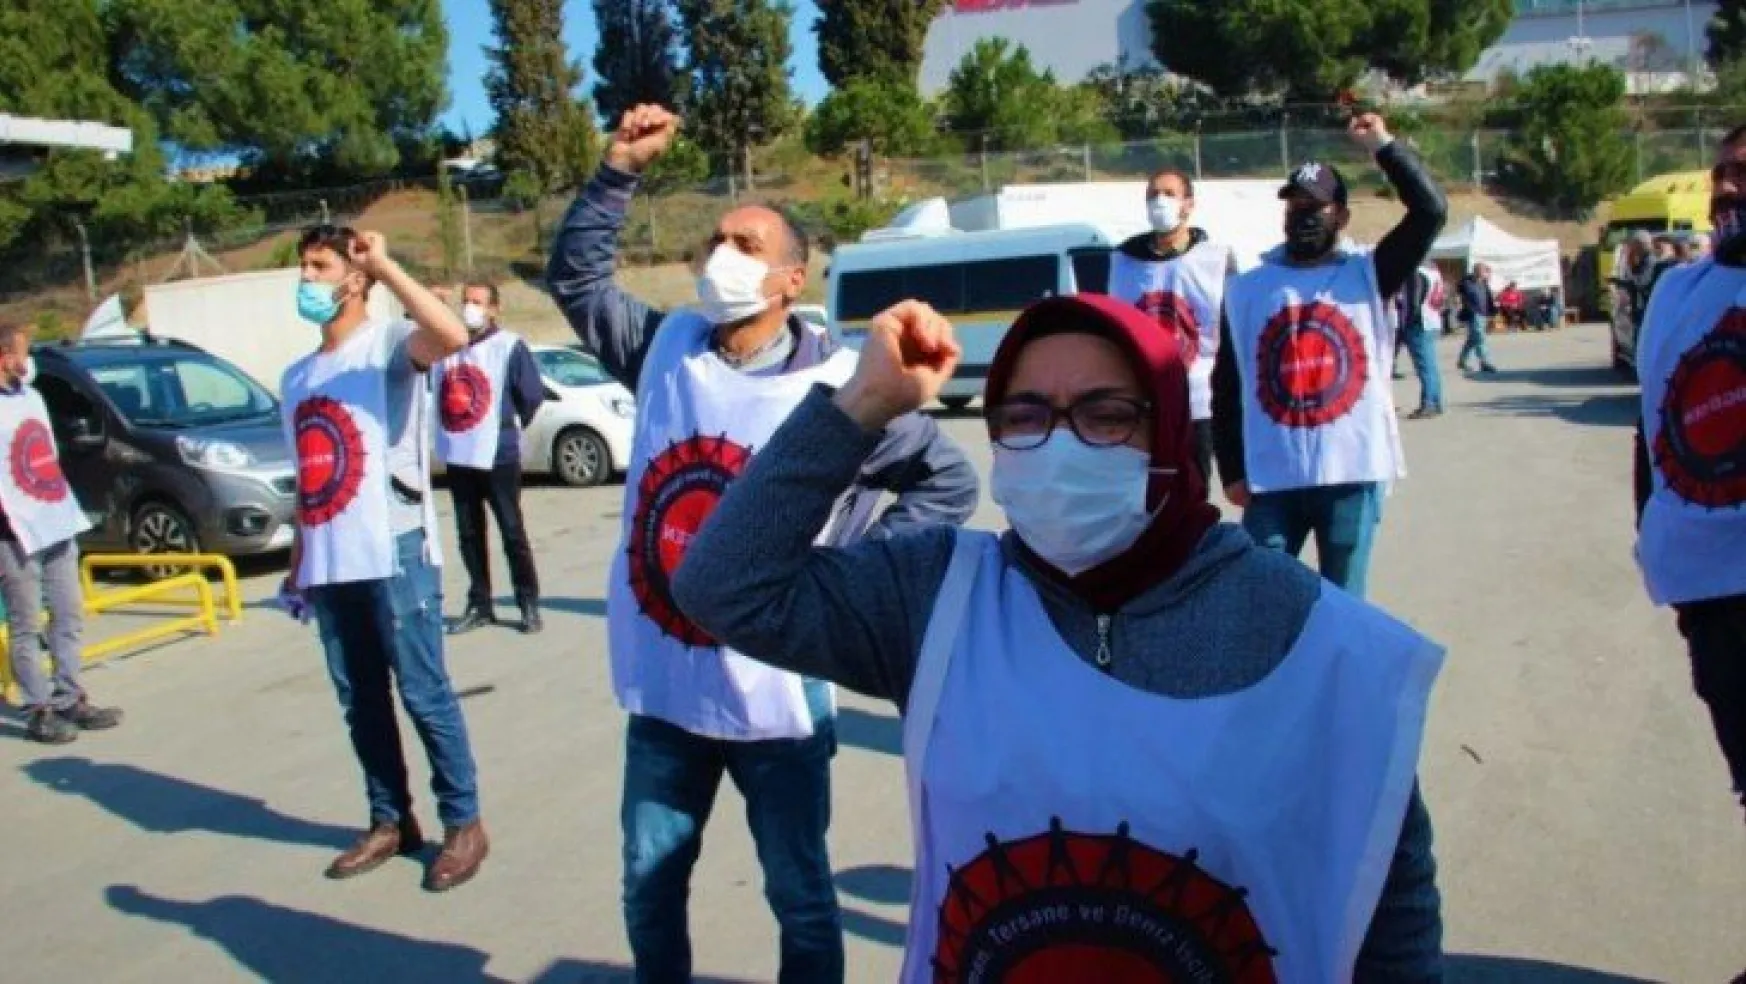 Migros işçileri 50 gündür haklarını aramak için depo önünde direniyor